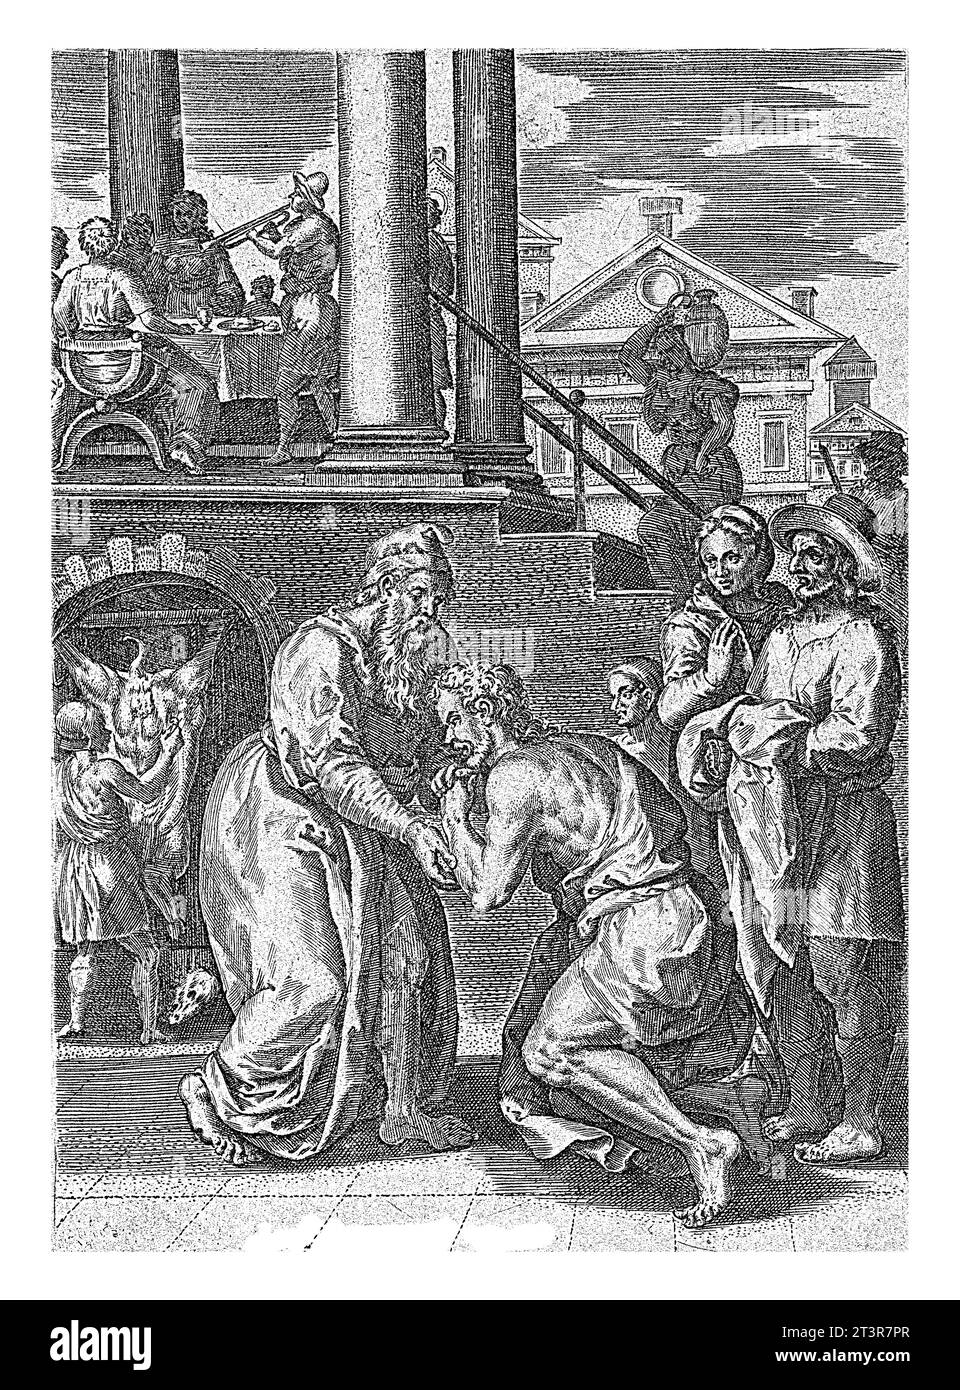 The Prodigal Son Comes Home, Abraham de Bruyn, dopo Crispijn van den Broeck, 1583 illustrazione del libro che accompagna la storia della parabola del Prod Foto Stock